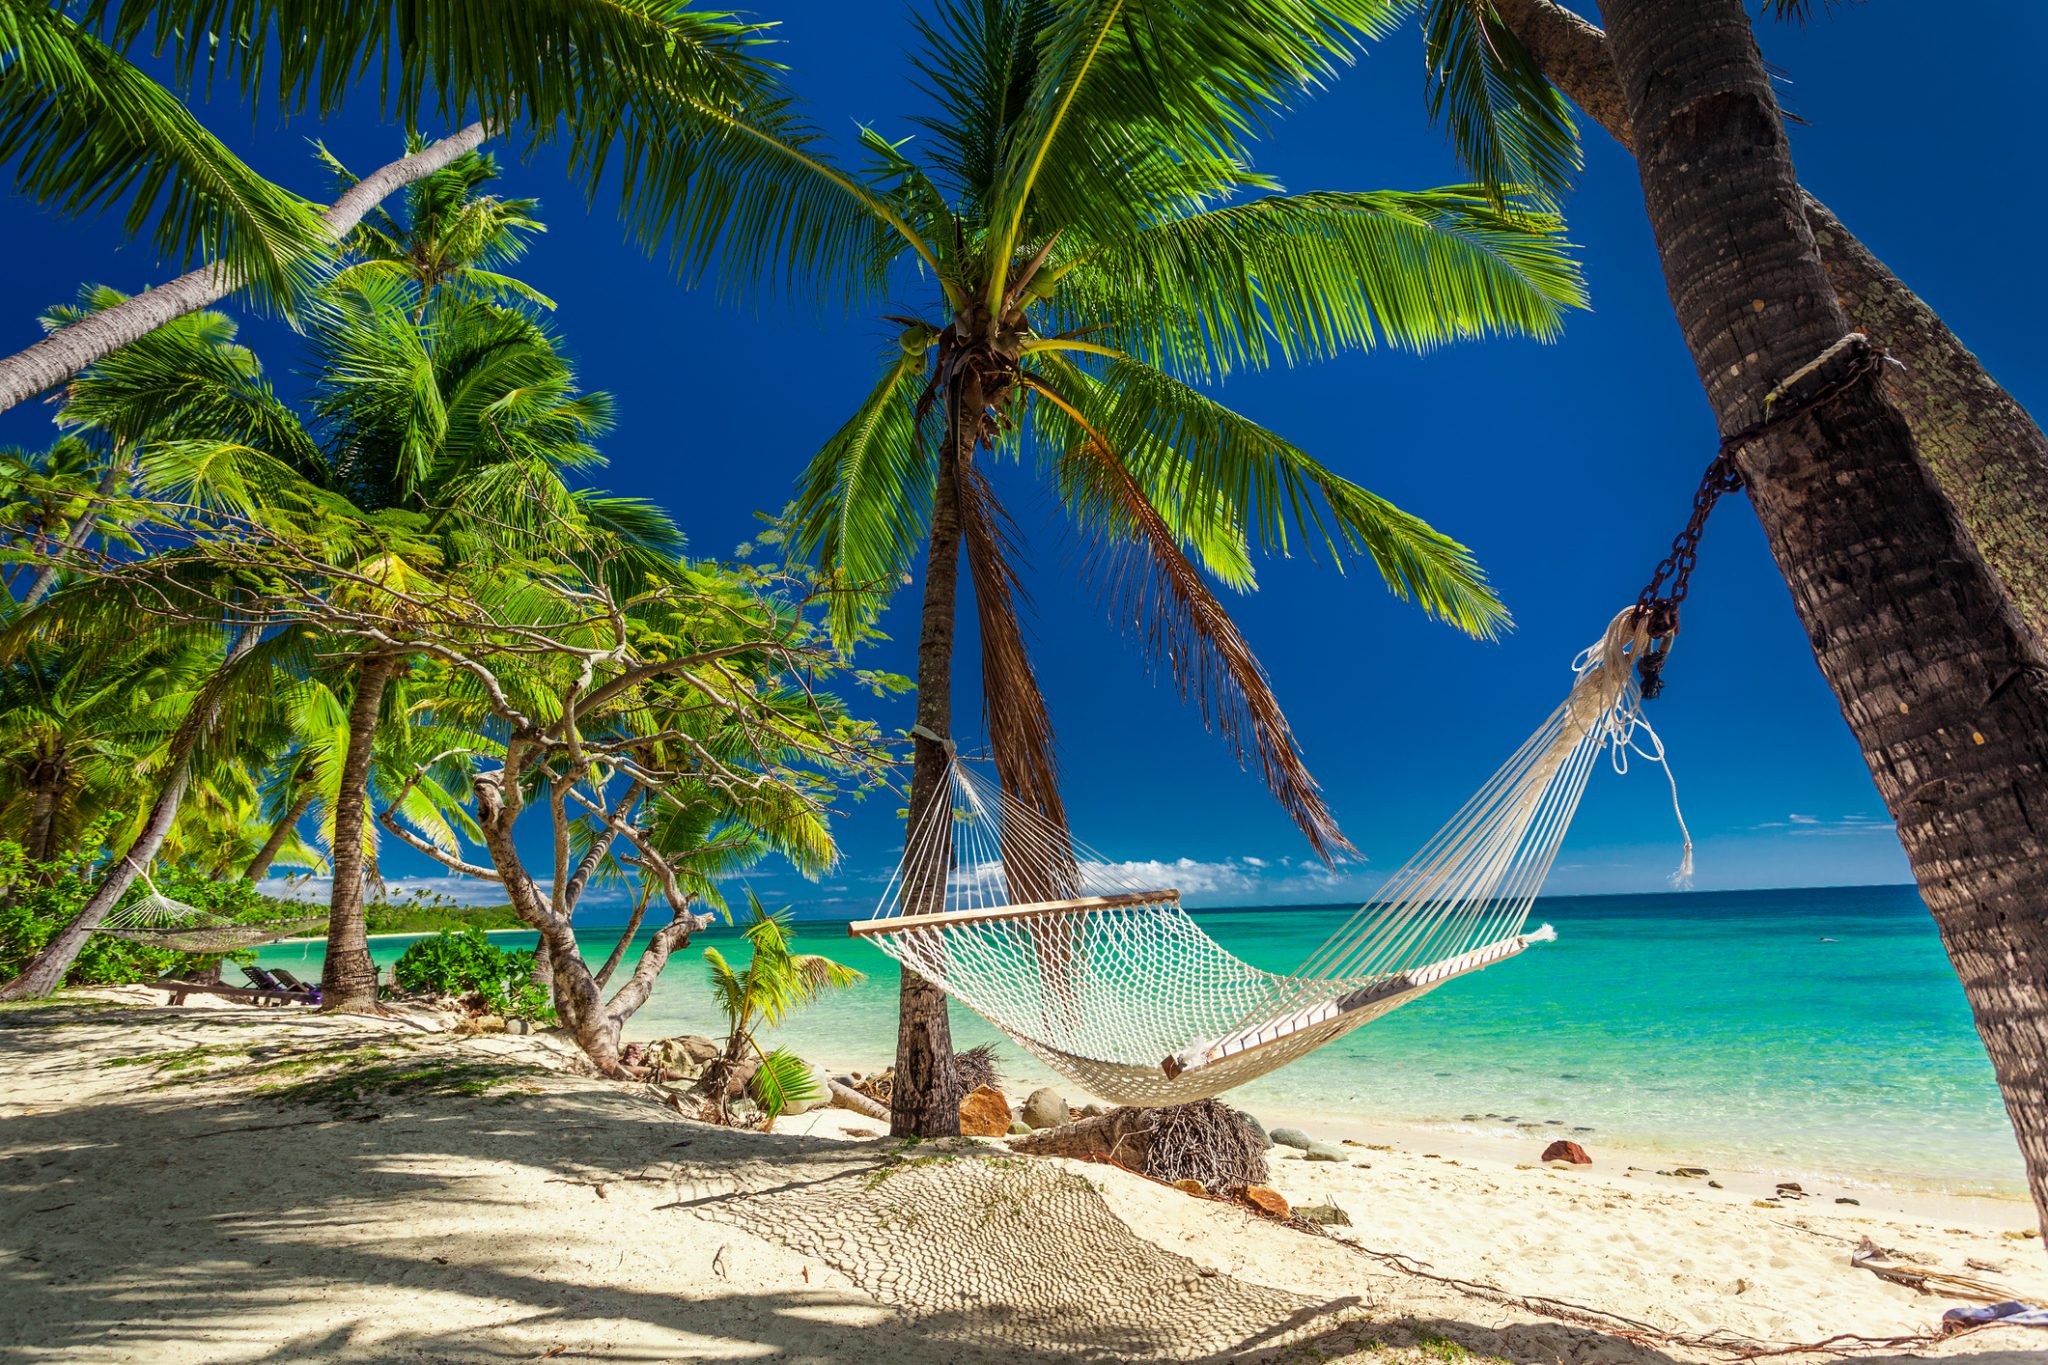 Empty hammock in the shade of palm trees,  Fiji